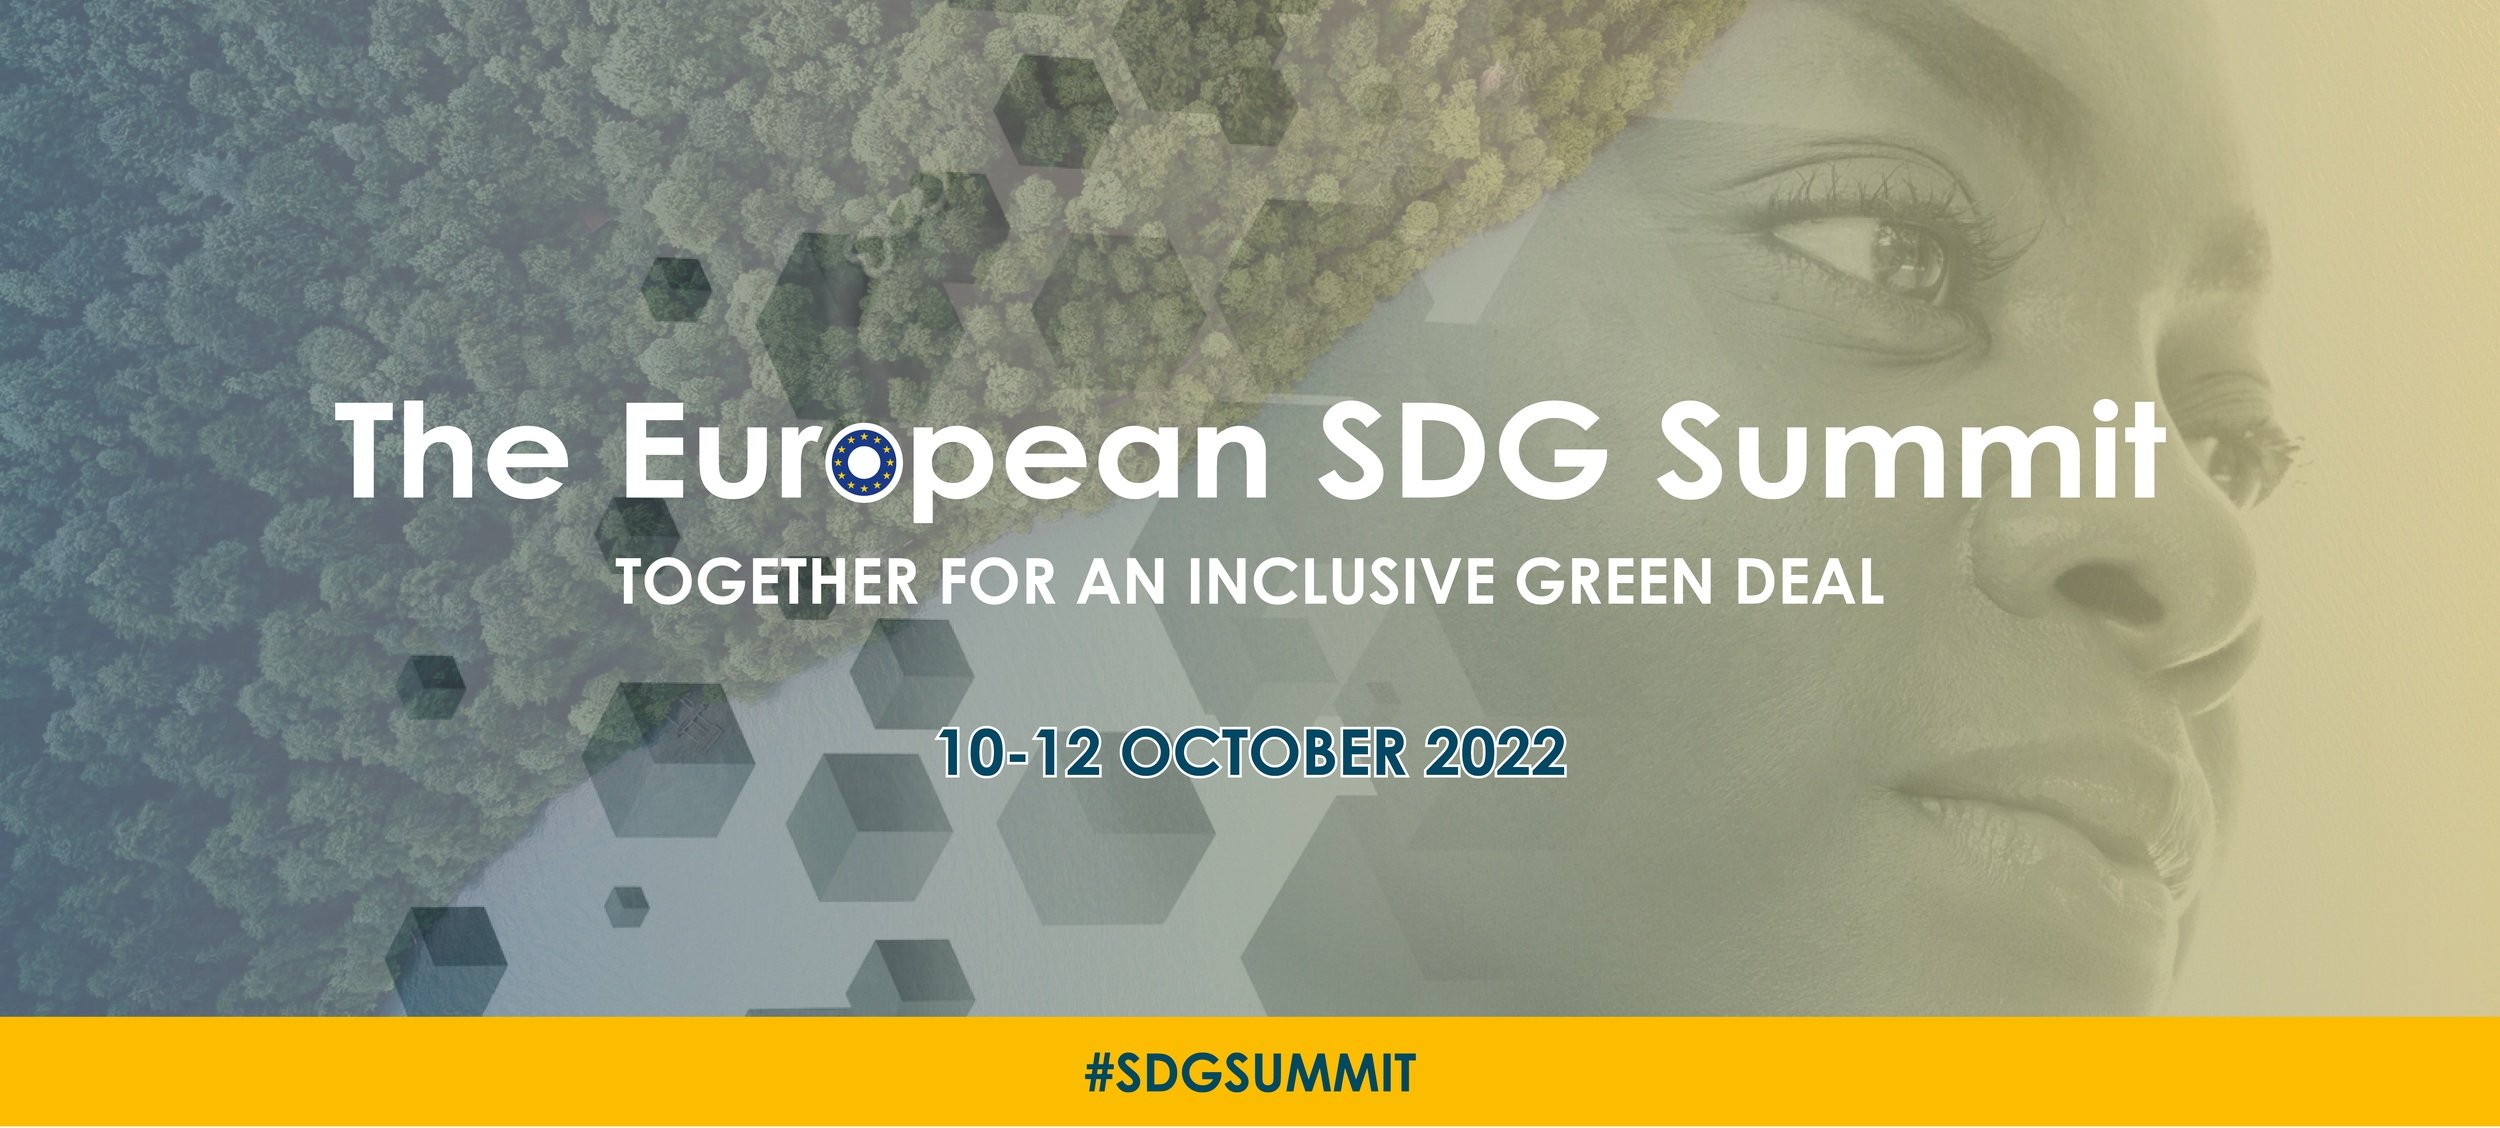 CSR Europe kutsub: the European SDG Summit 2022